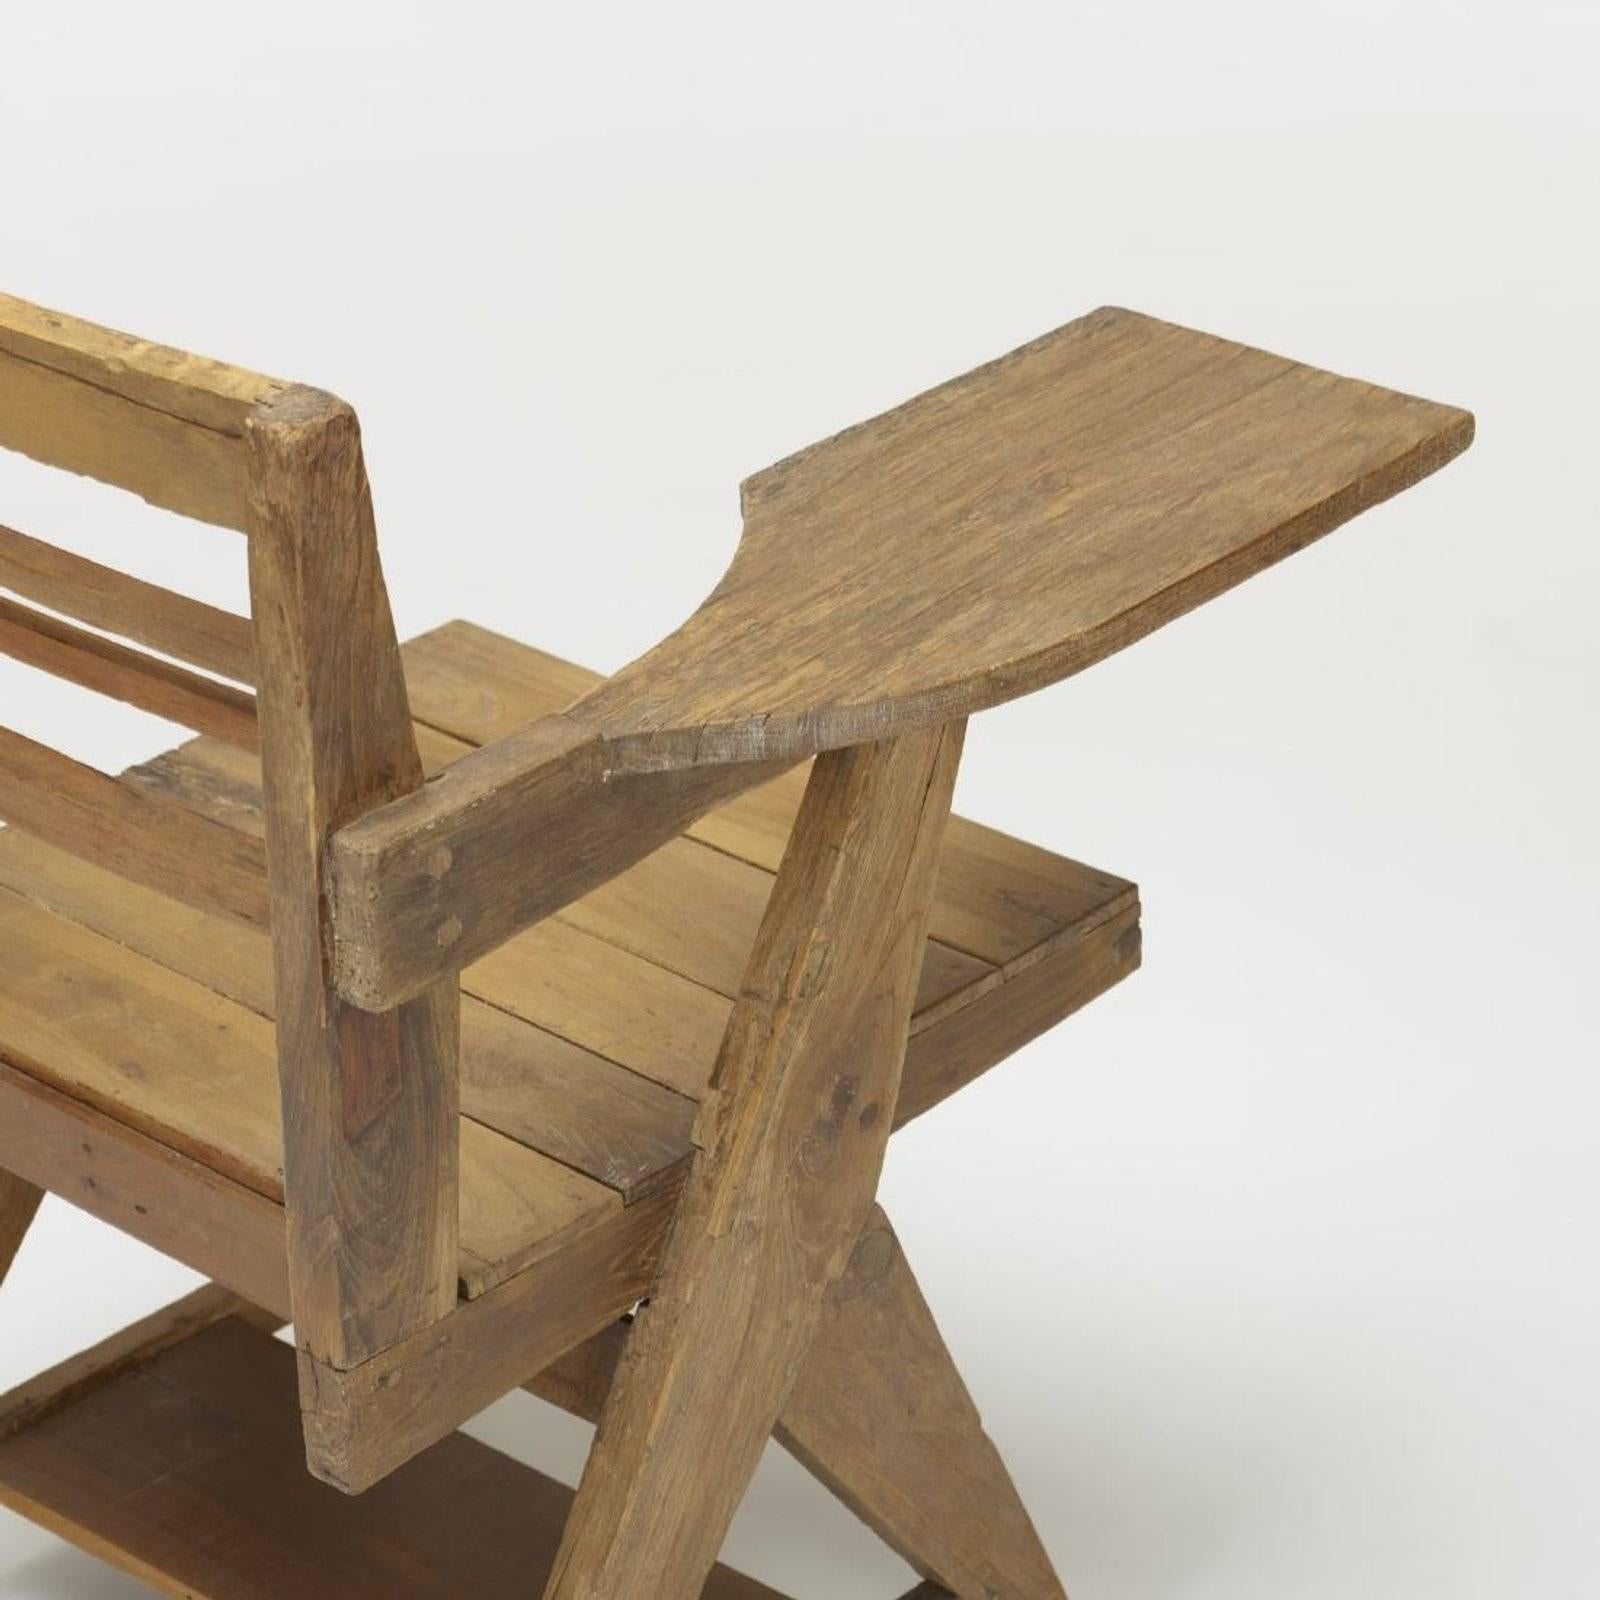 Cette paire de chaises de bureau a été créée spécialement pour le bâtiment administratif de Chandigarh. Conçu par le cousin du Corbusier, Pierre Jeanneret.

Provenance : Université du Punjab, Chandigarh, Inde Collection privée,